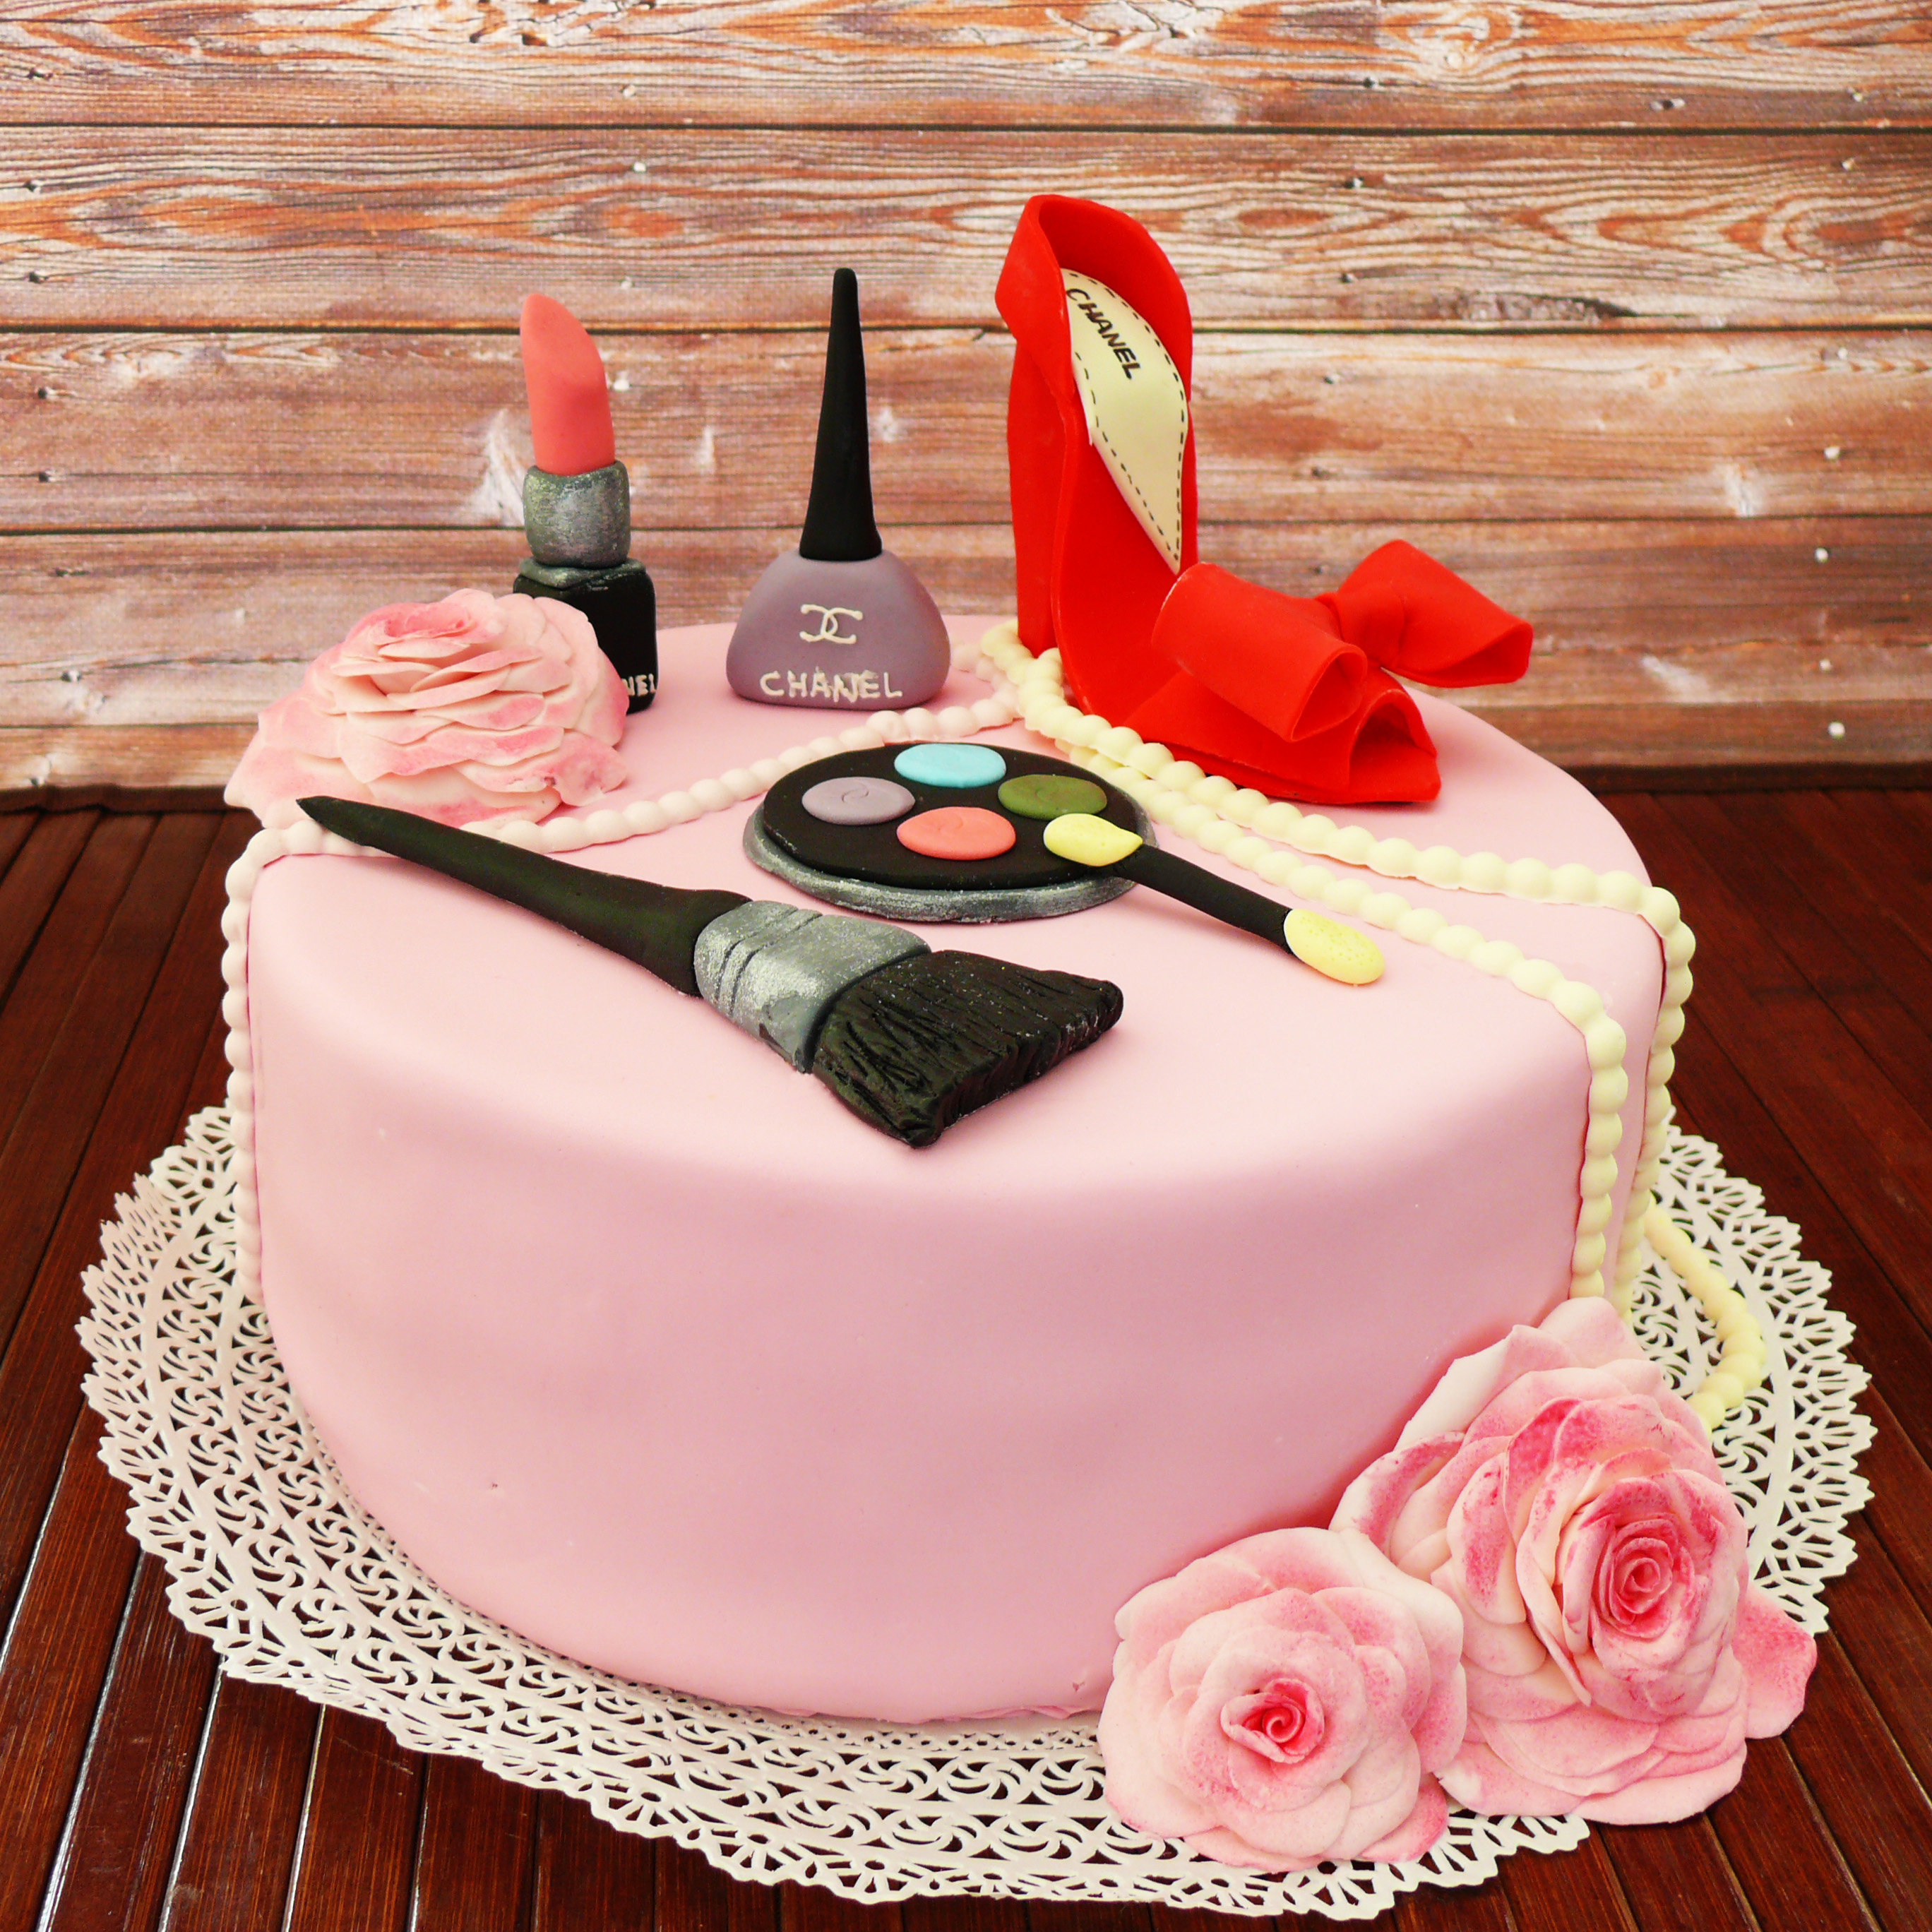 Заказ на дом на день рождения. Красивый торт для женщины. Эксклюзивные торты. Торт на заказ. Красивый торт с косметикой.